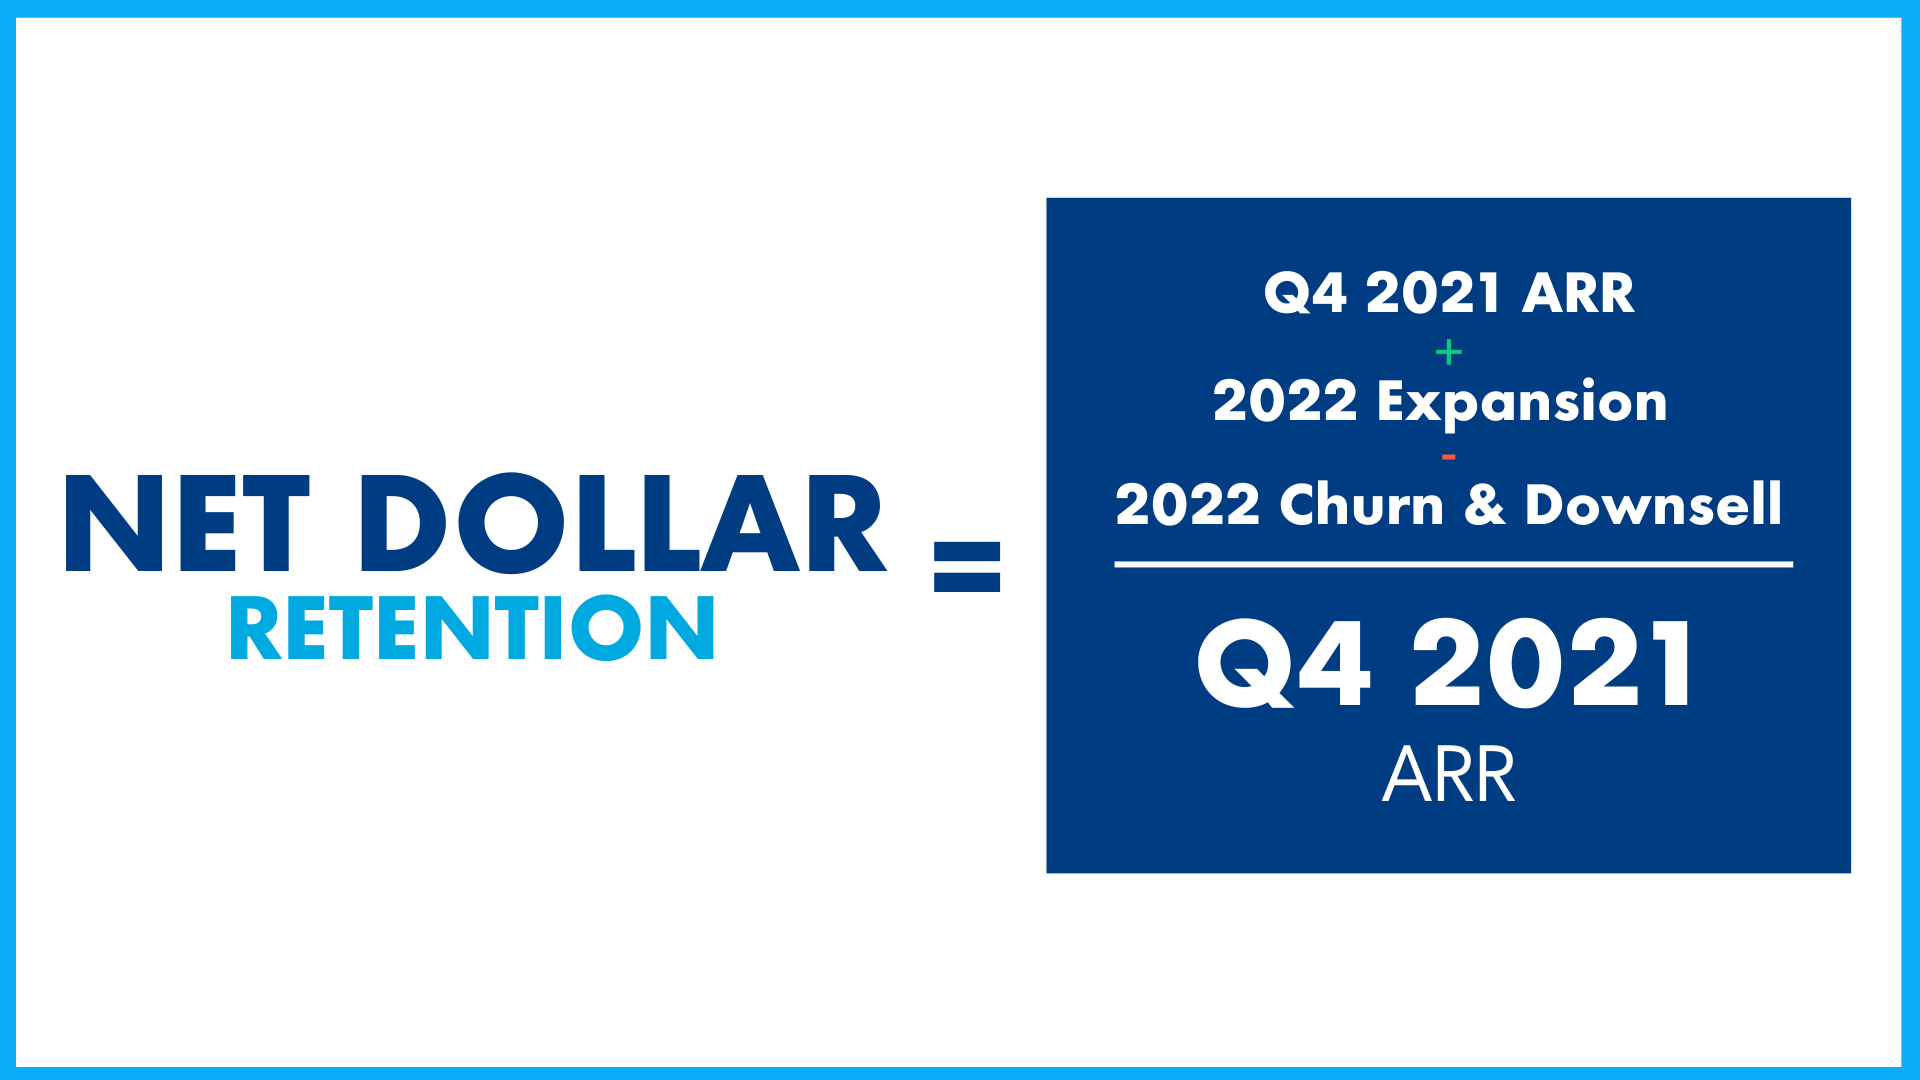 Infografía que muestra la fórmula para la retención neta de dólares en 2022 para que las empresas SaaS la comparen.